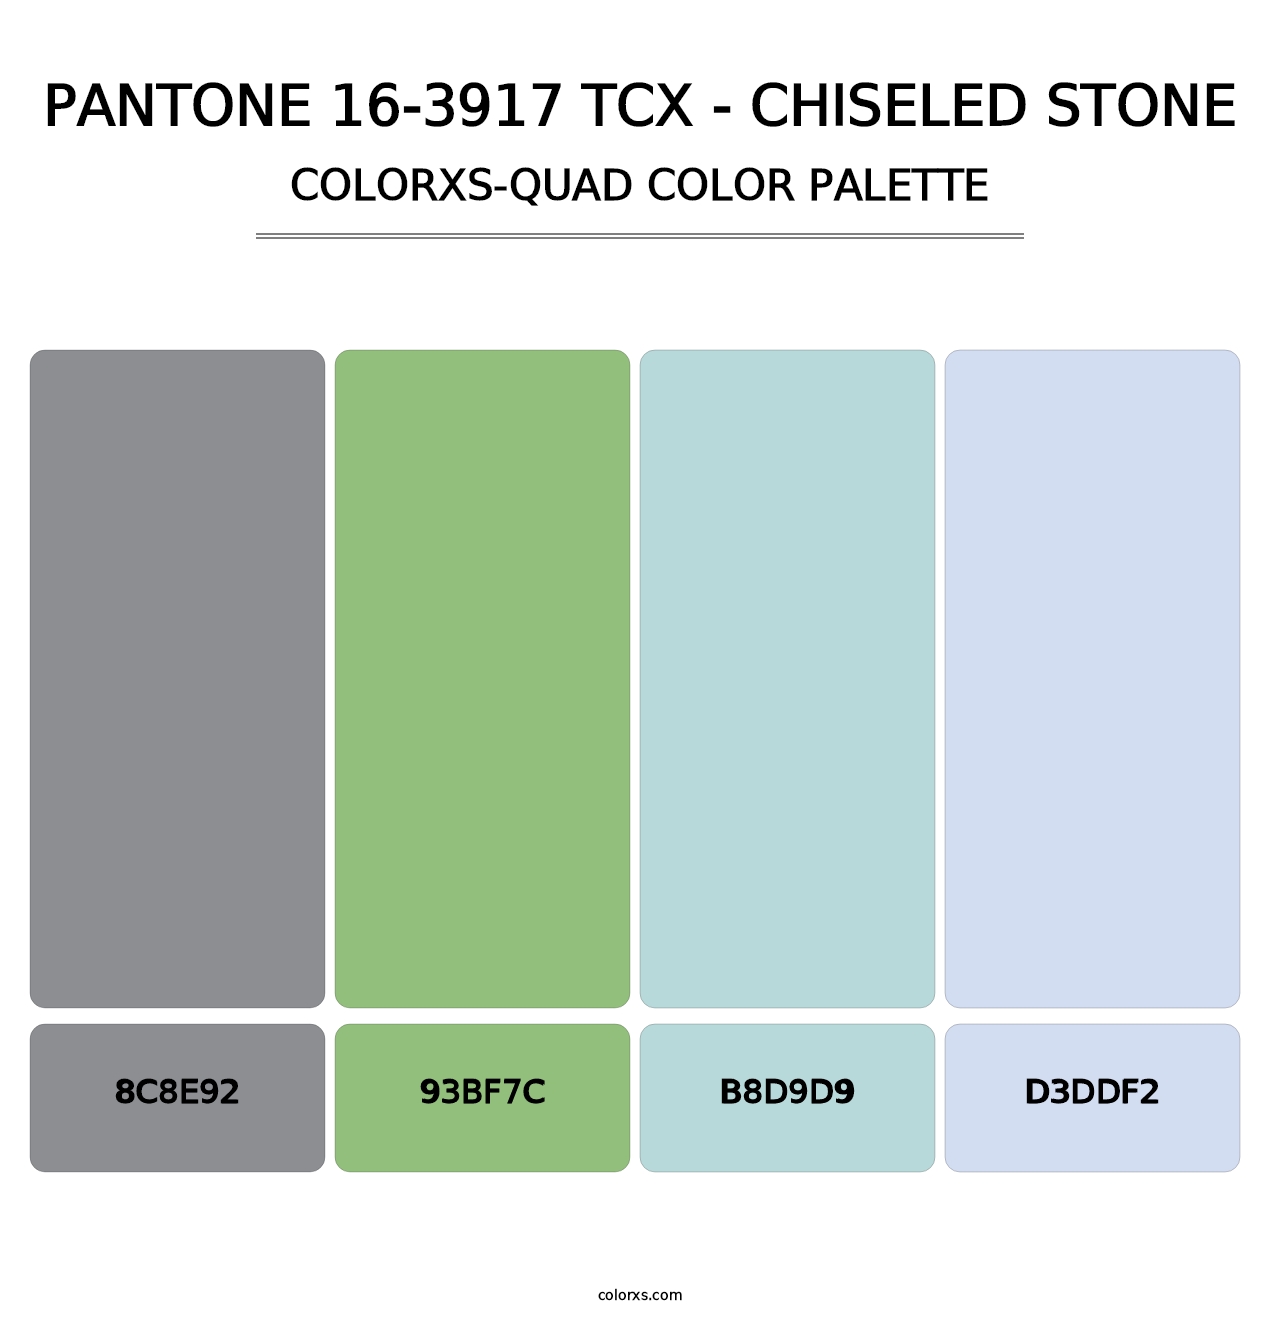 PANTONE 16-3917 TCX - Chiseled Stone - Colorxs Quad Palette